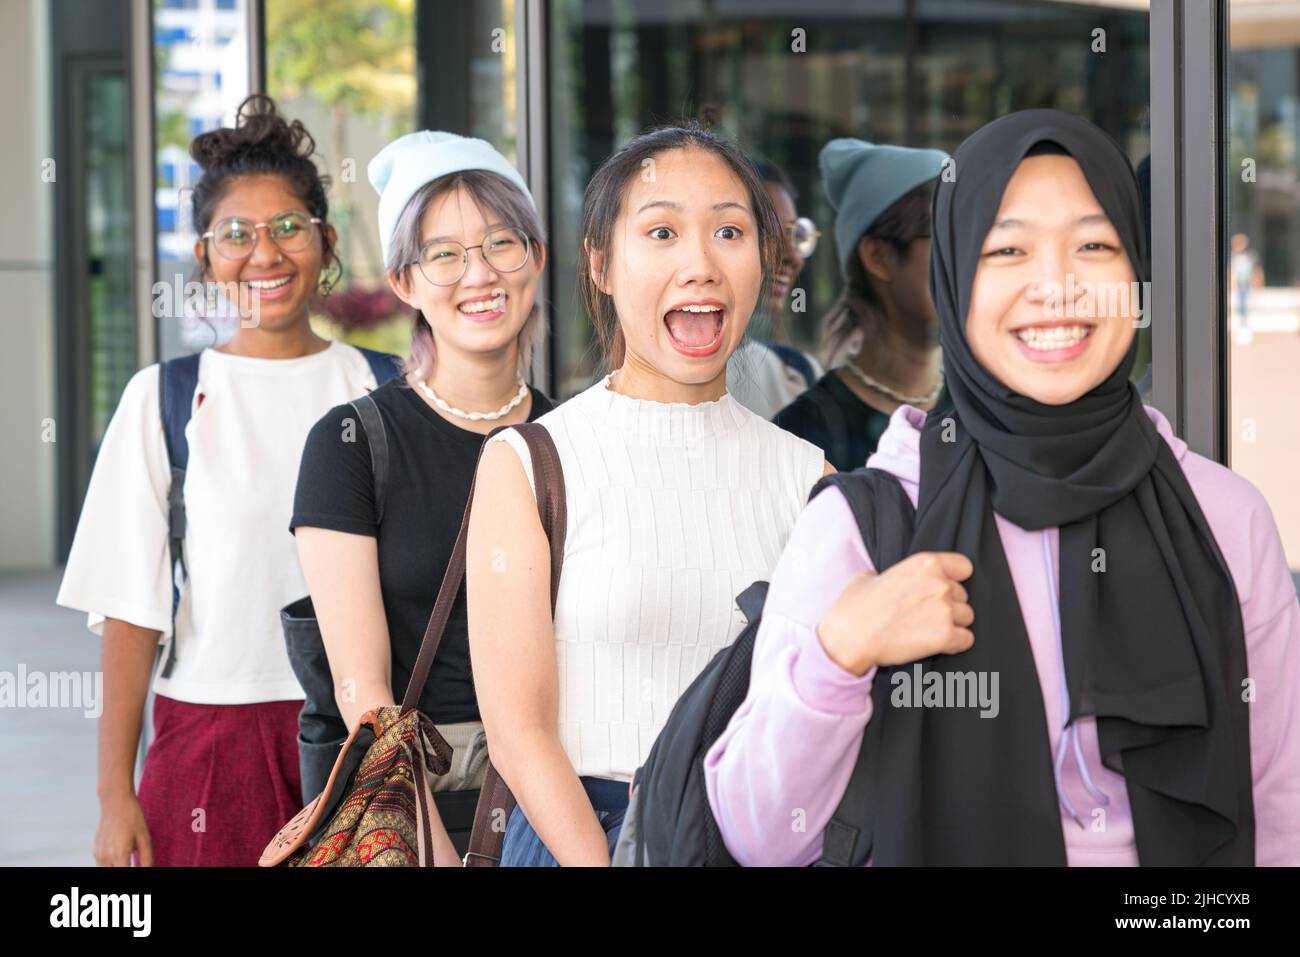 Groupe de jeunes femmes multiethniques heureuses debout dans une rangée. Mise au point sélectionnée. Banque D'Images